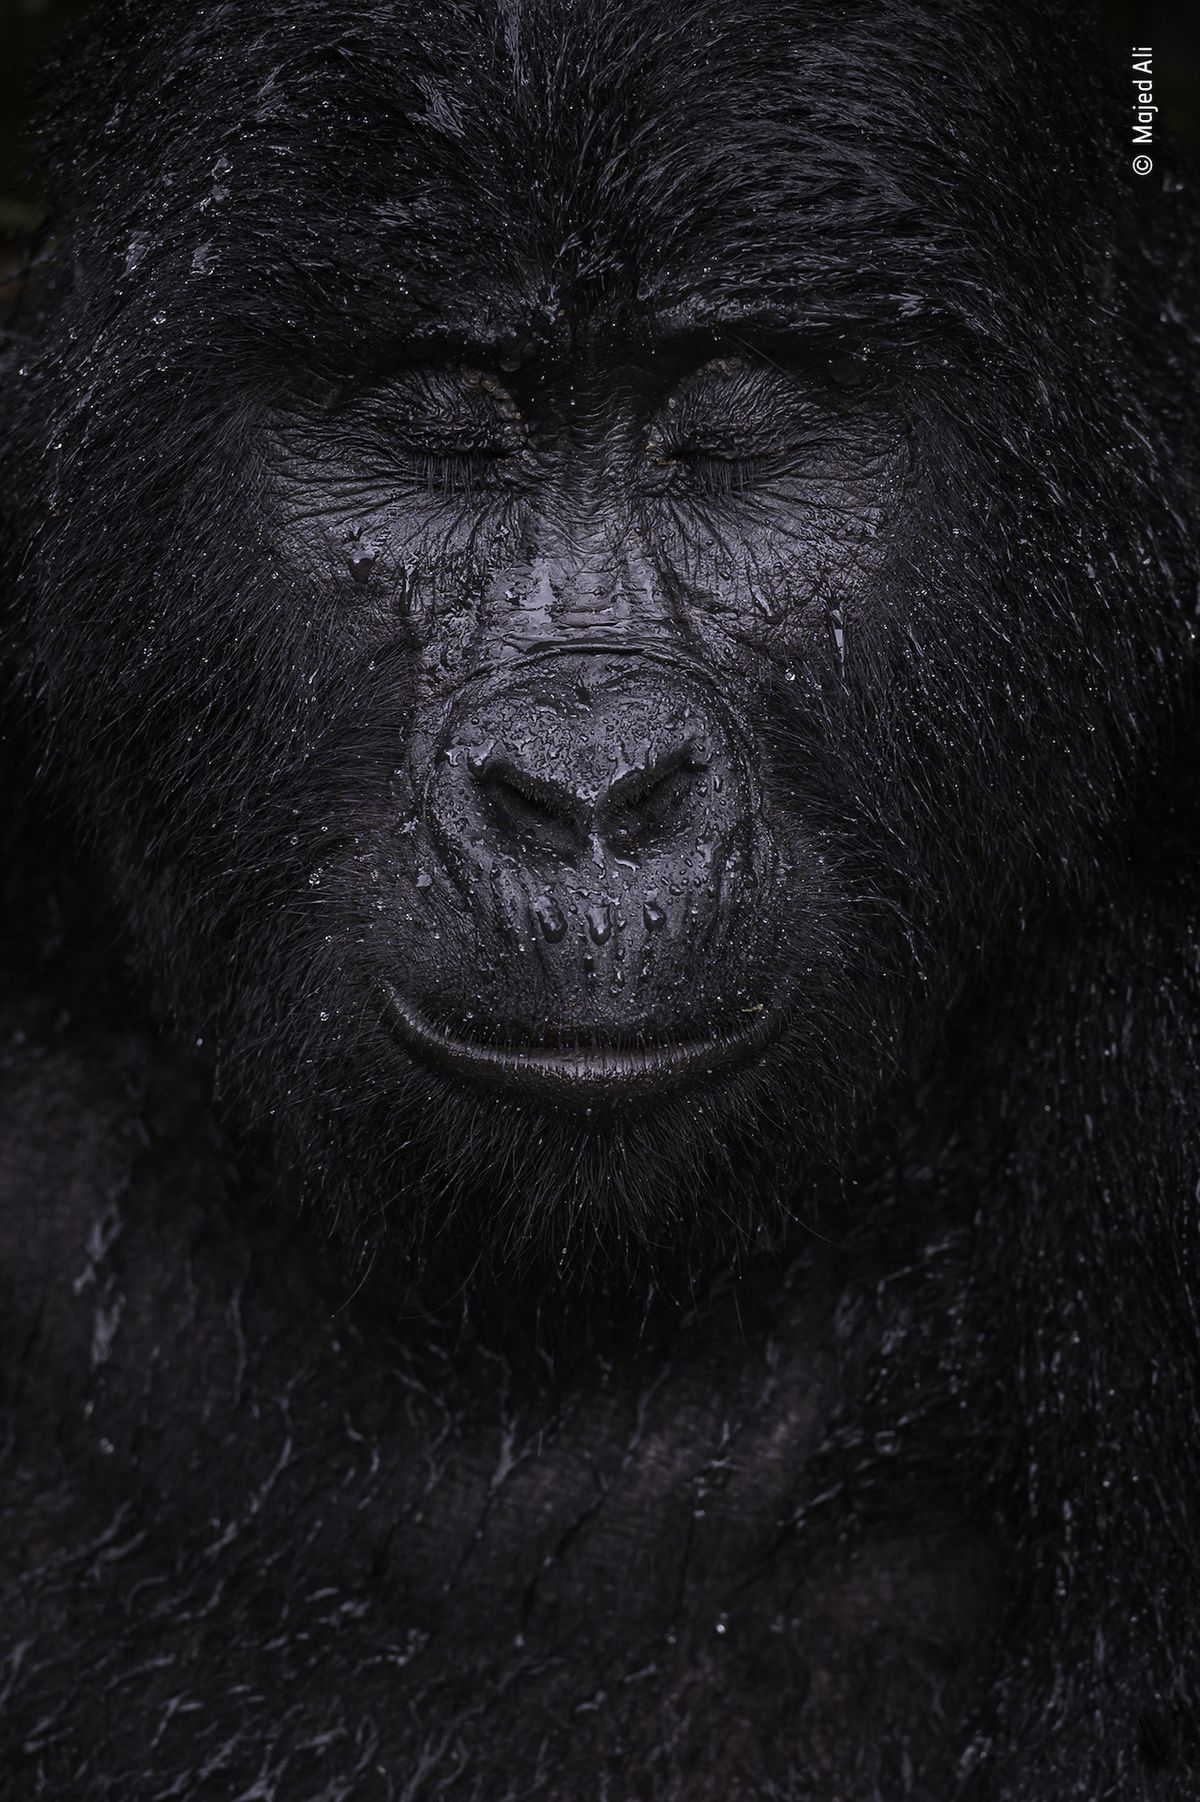 Odraz – vítěz kategorie Zvířecí portrét: Alimu se podařila vyfotit téměř čtyřicetiletou horskou gorilu jménem Kibande v okamžiku, kdy přivírala oči před sílícím deštěm.